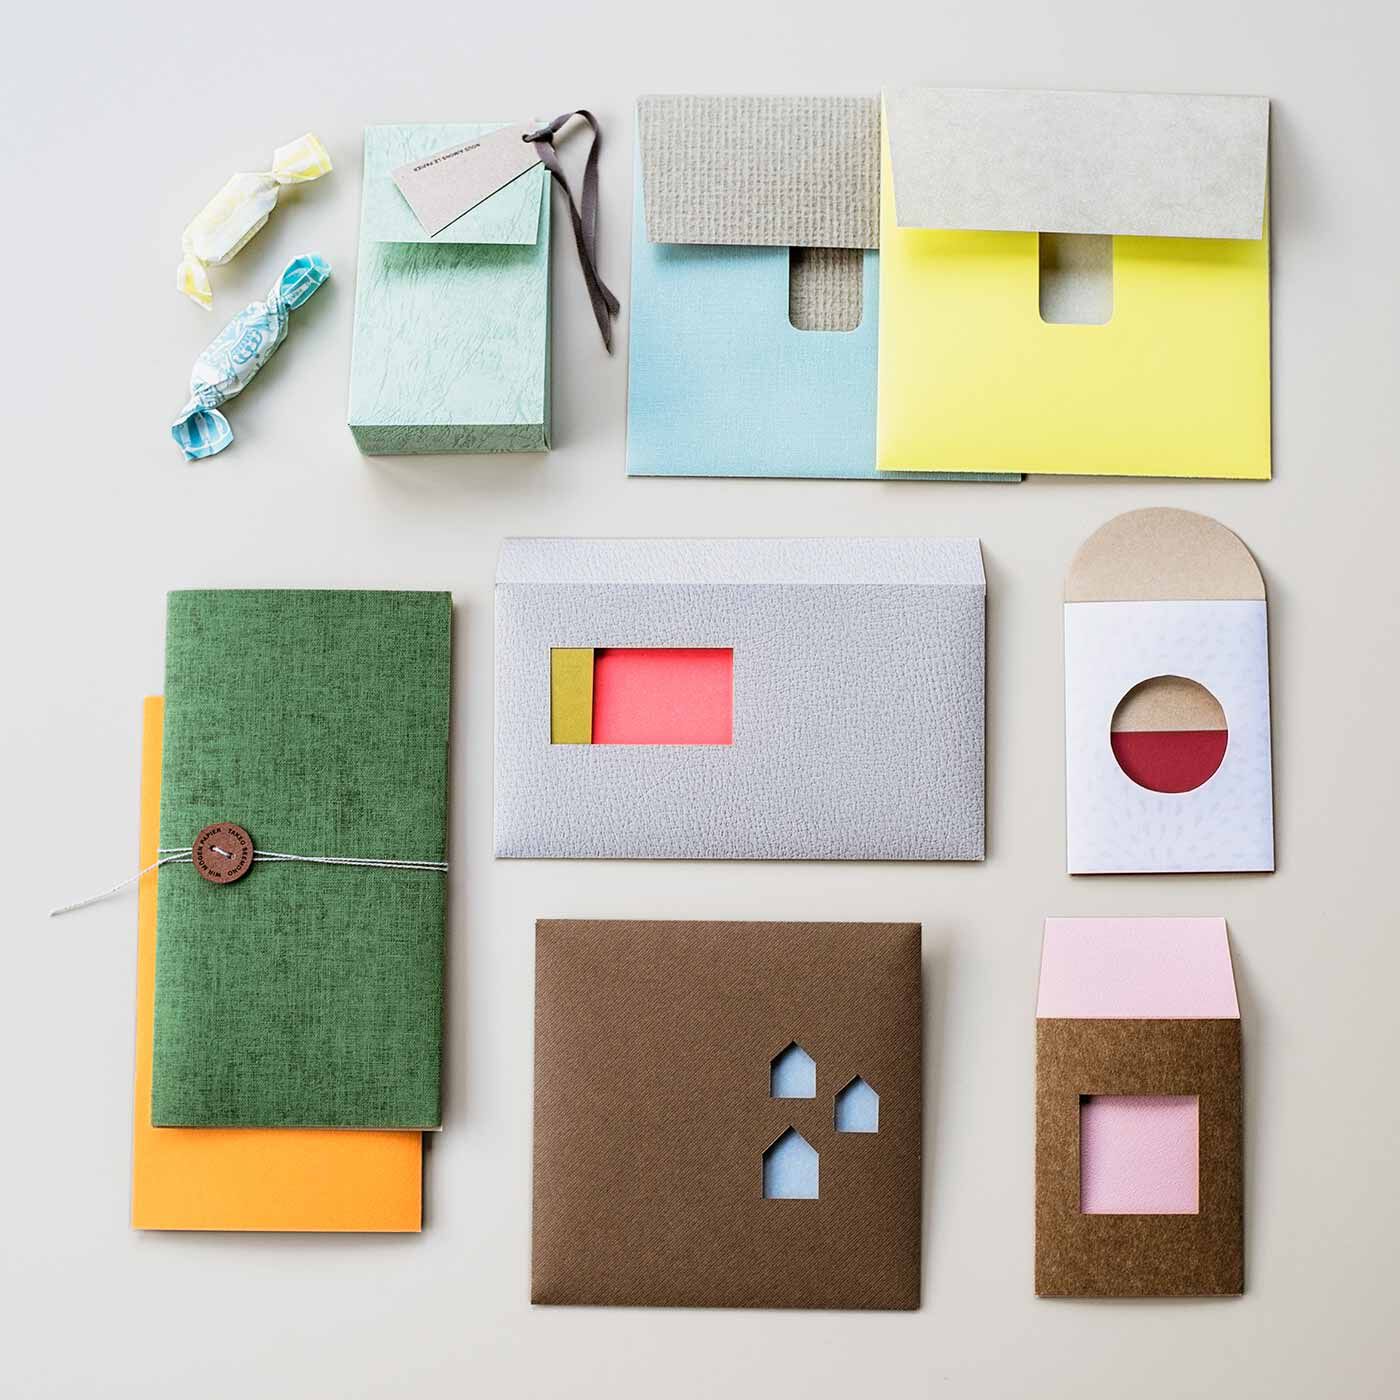 SeeMONO|紙の専門商社 竹尾 監修 世界6都市をイメージした紙コレクション＆テンプレートの会|6種類のテンプレートを使って封筒が作れます。ギフトや手紙に添えて素敵なアクセントに。